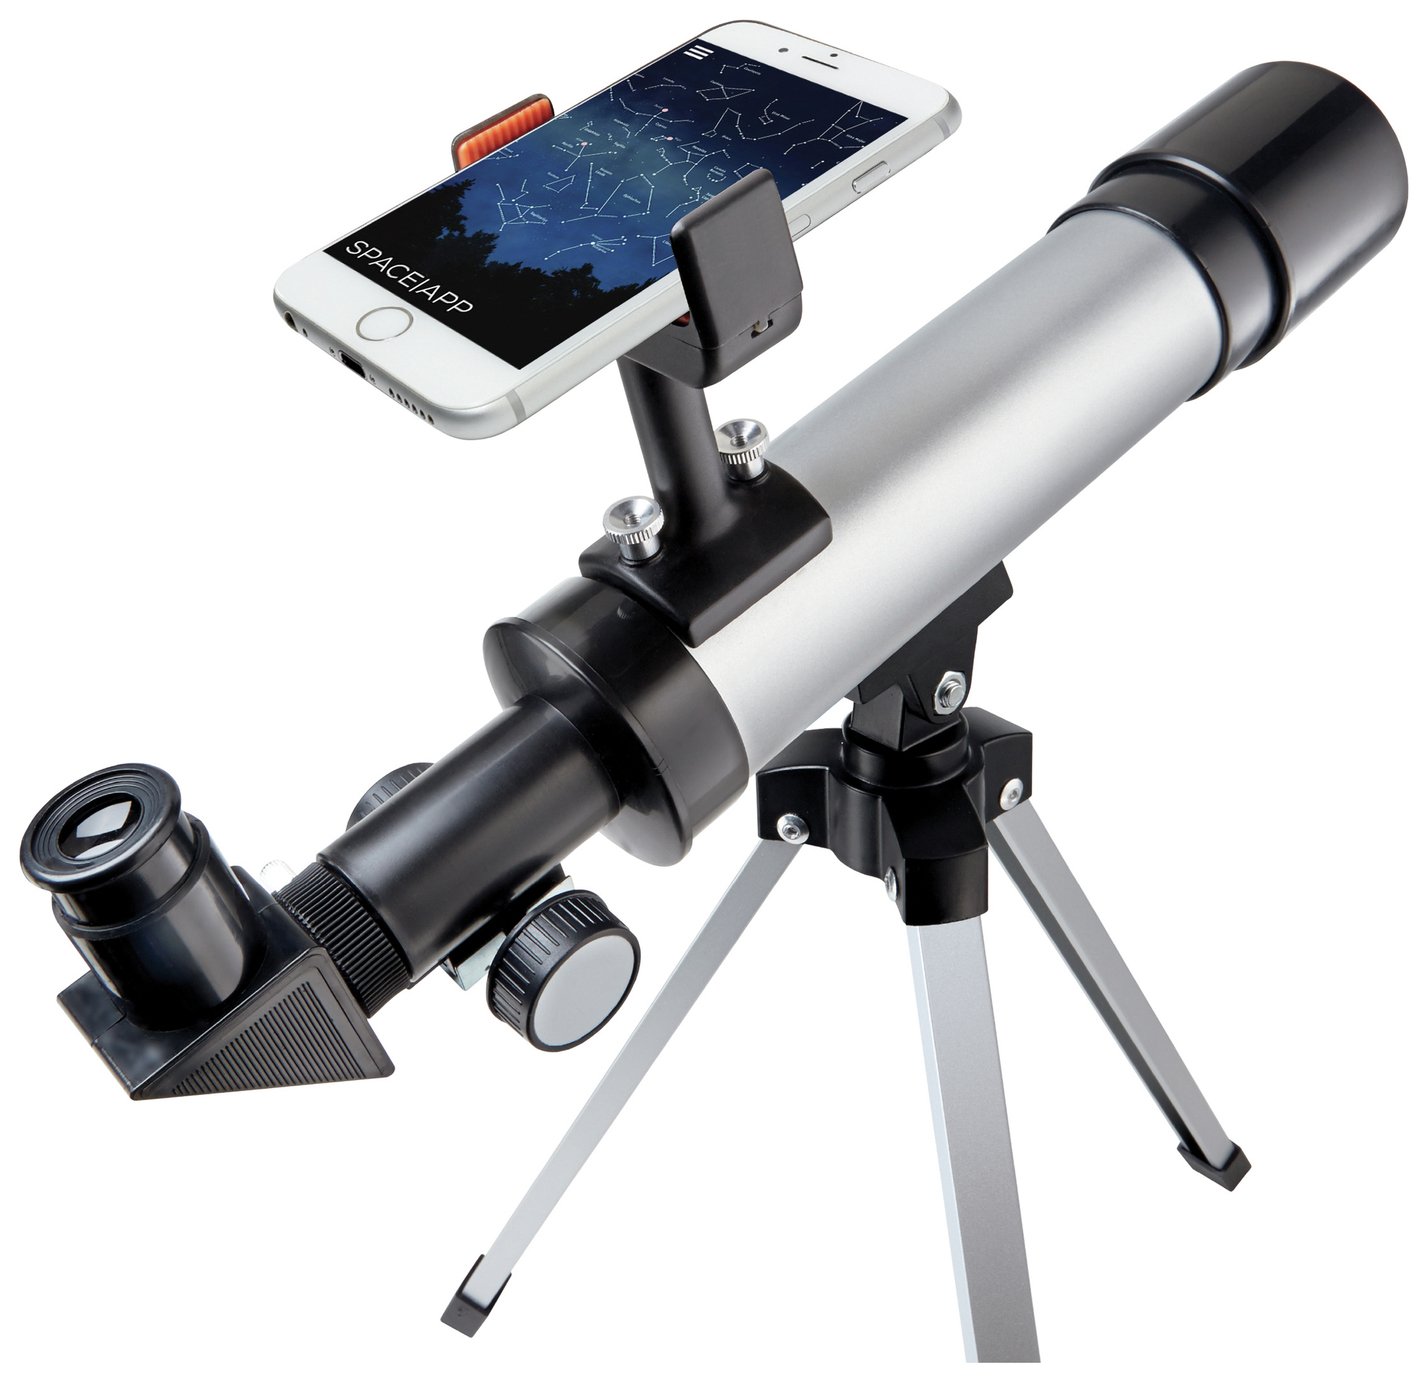 buy telescope